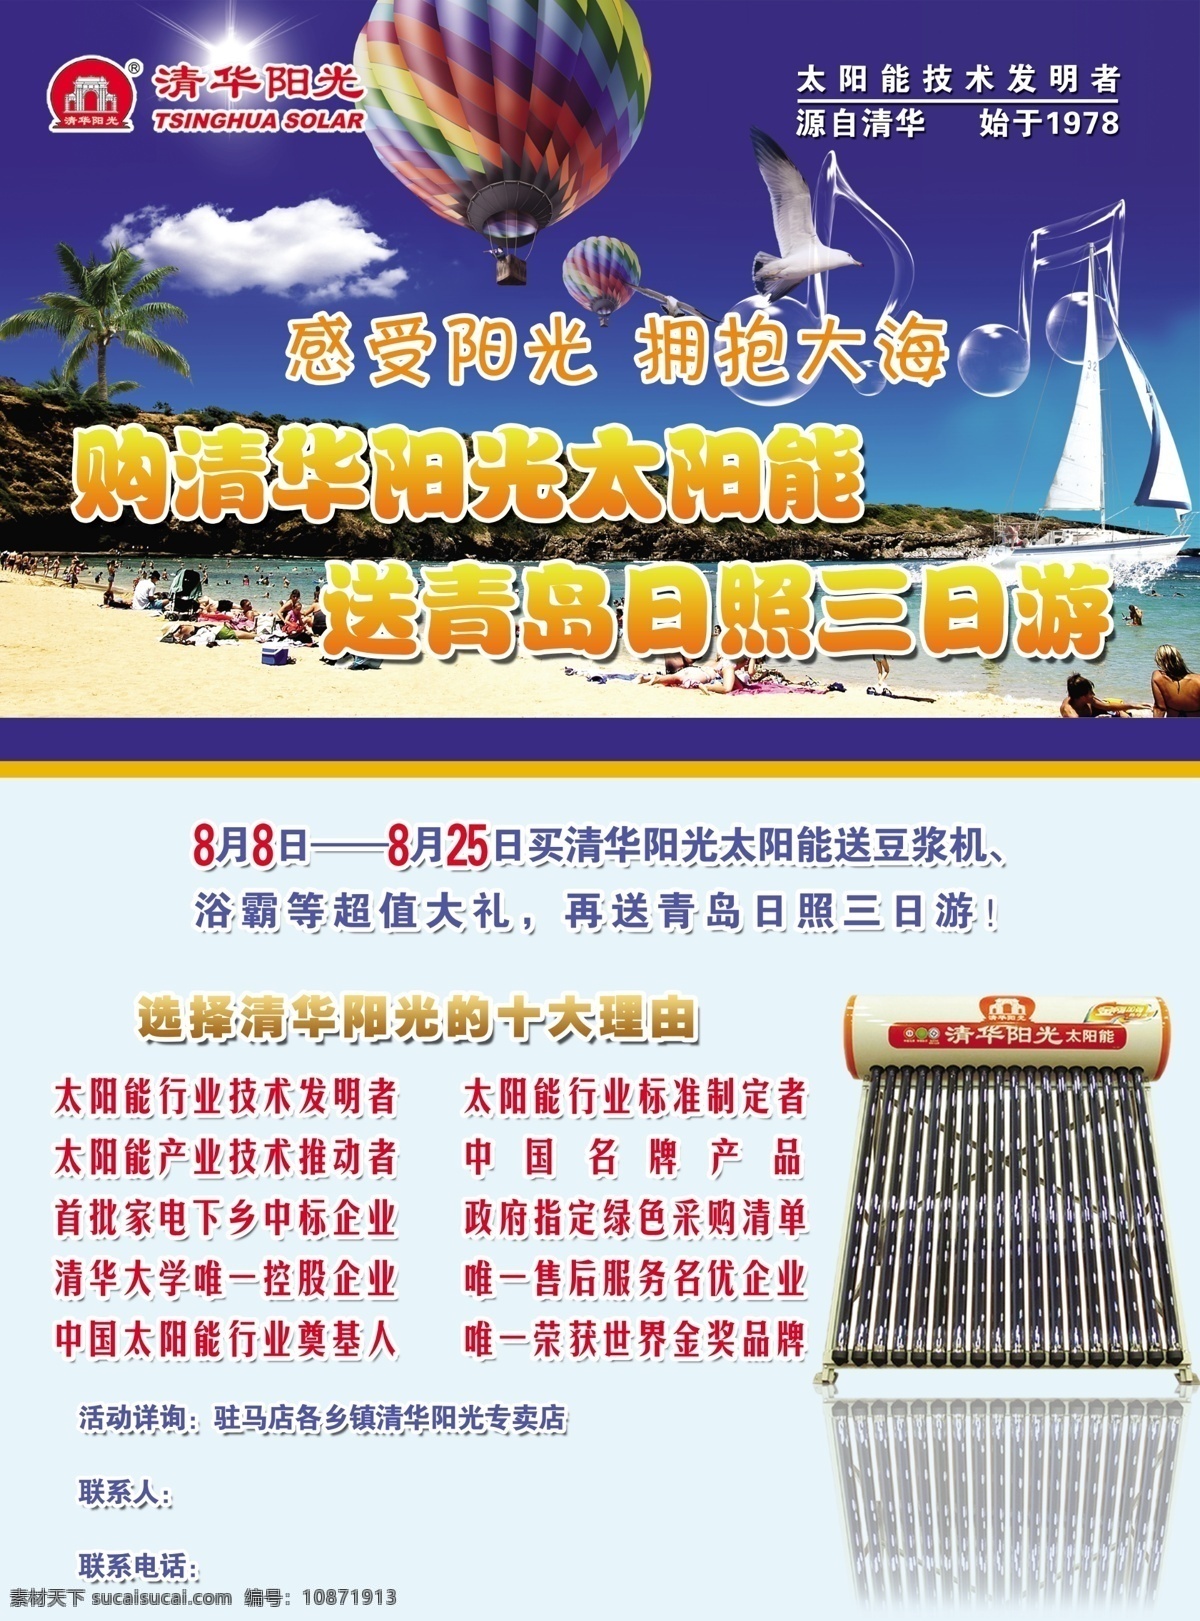 分层 帆船 海滩 青岛 清华阳光 热气球 沙滩 太阳能 清华 阳光 送 旅游 模板下载 海报 宣传画 源文件 其他海报设计